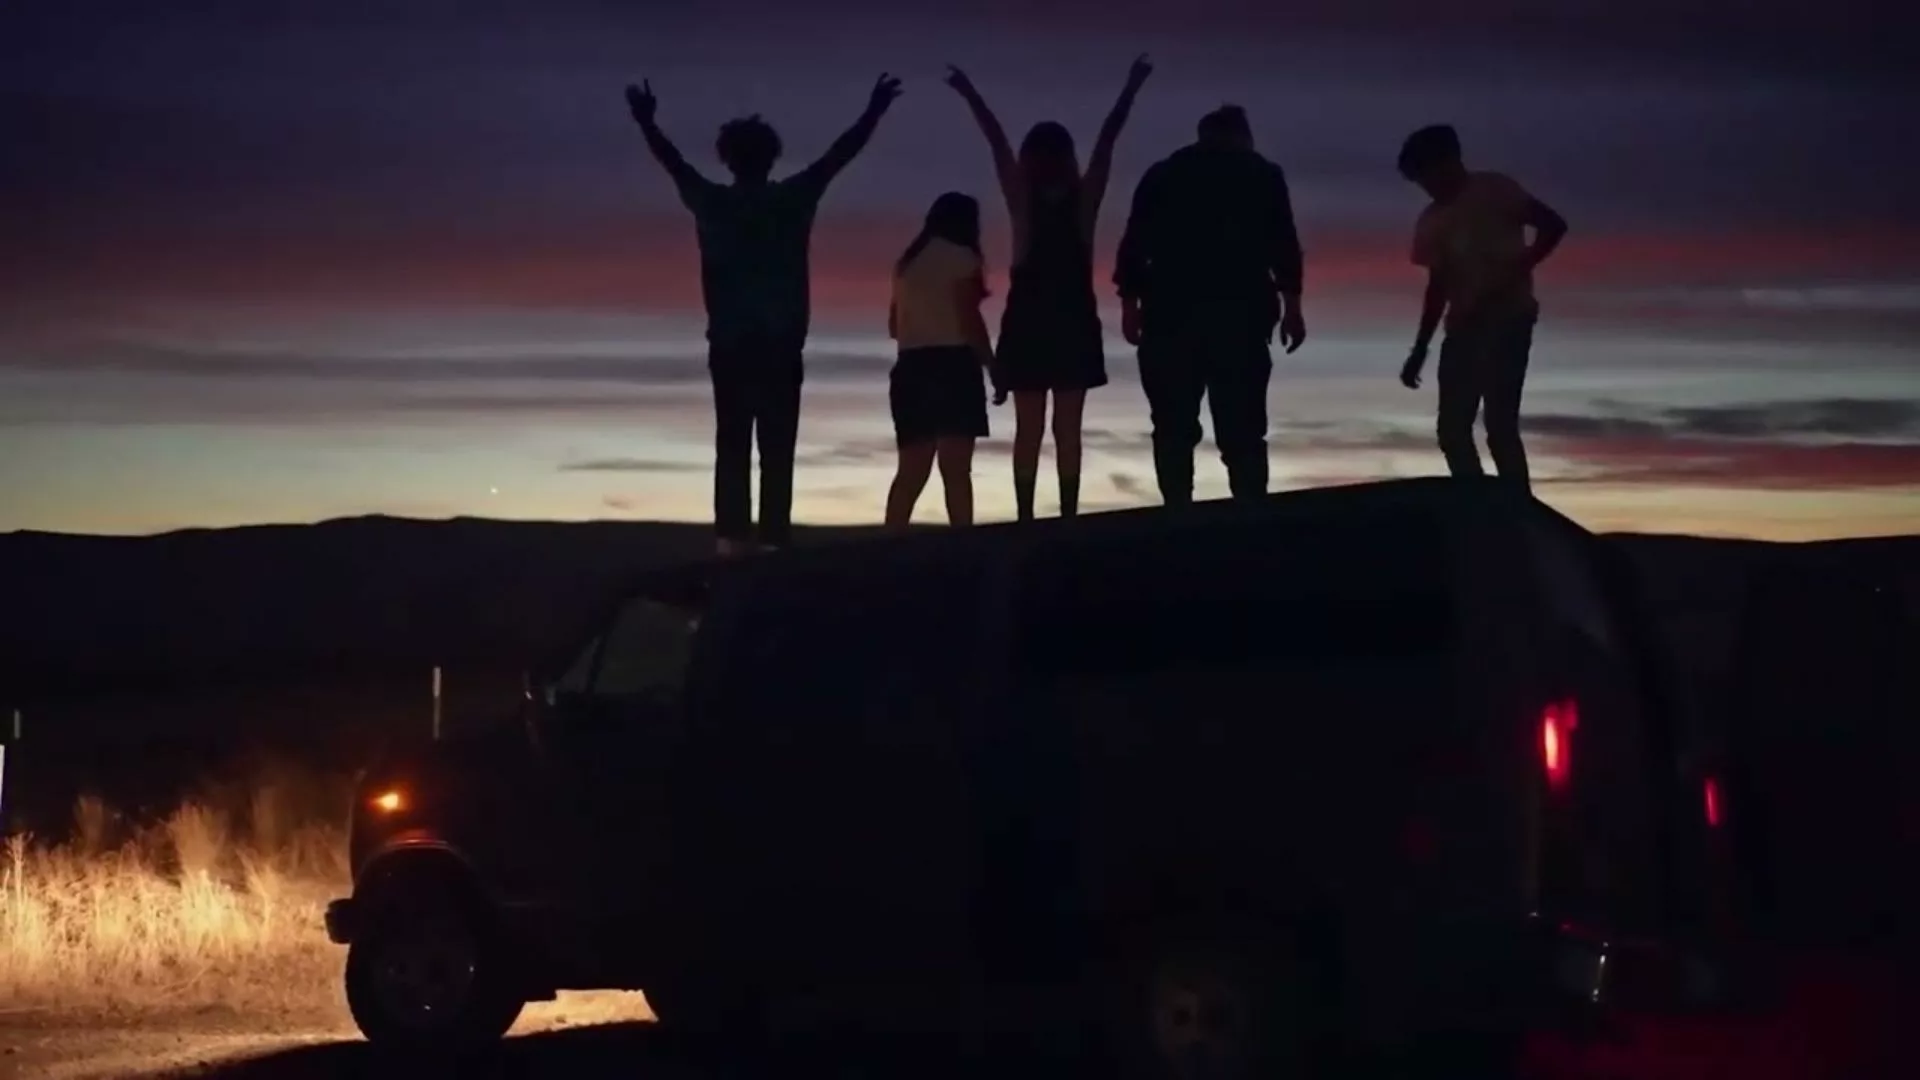 Teenagers standing on a van.